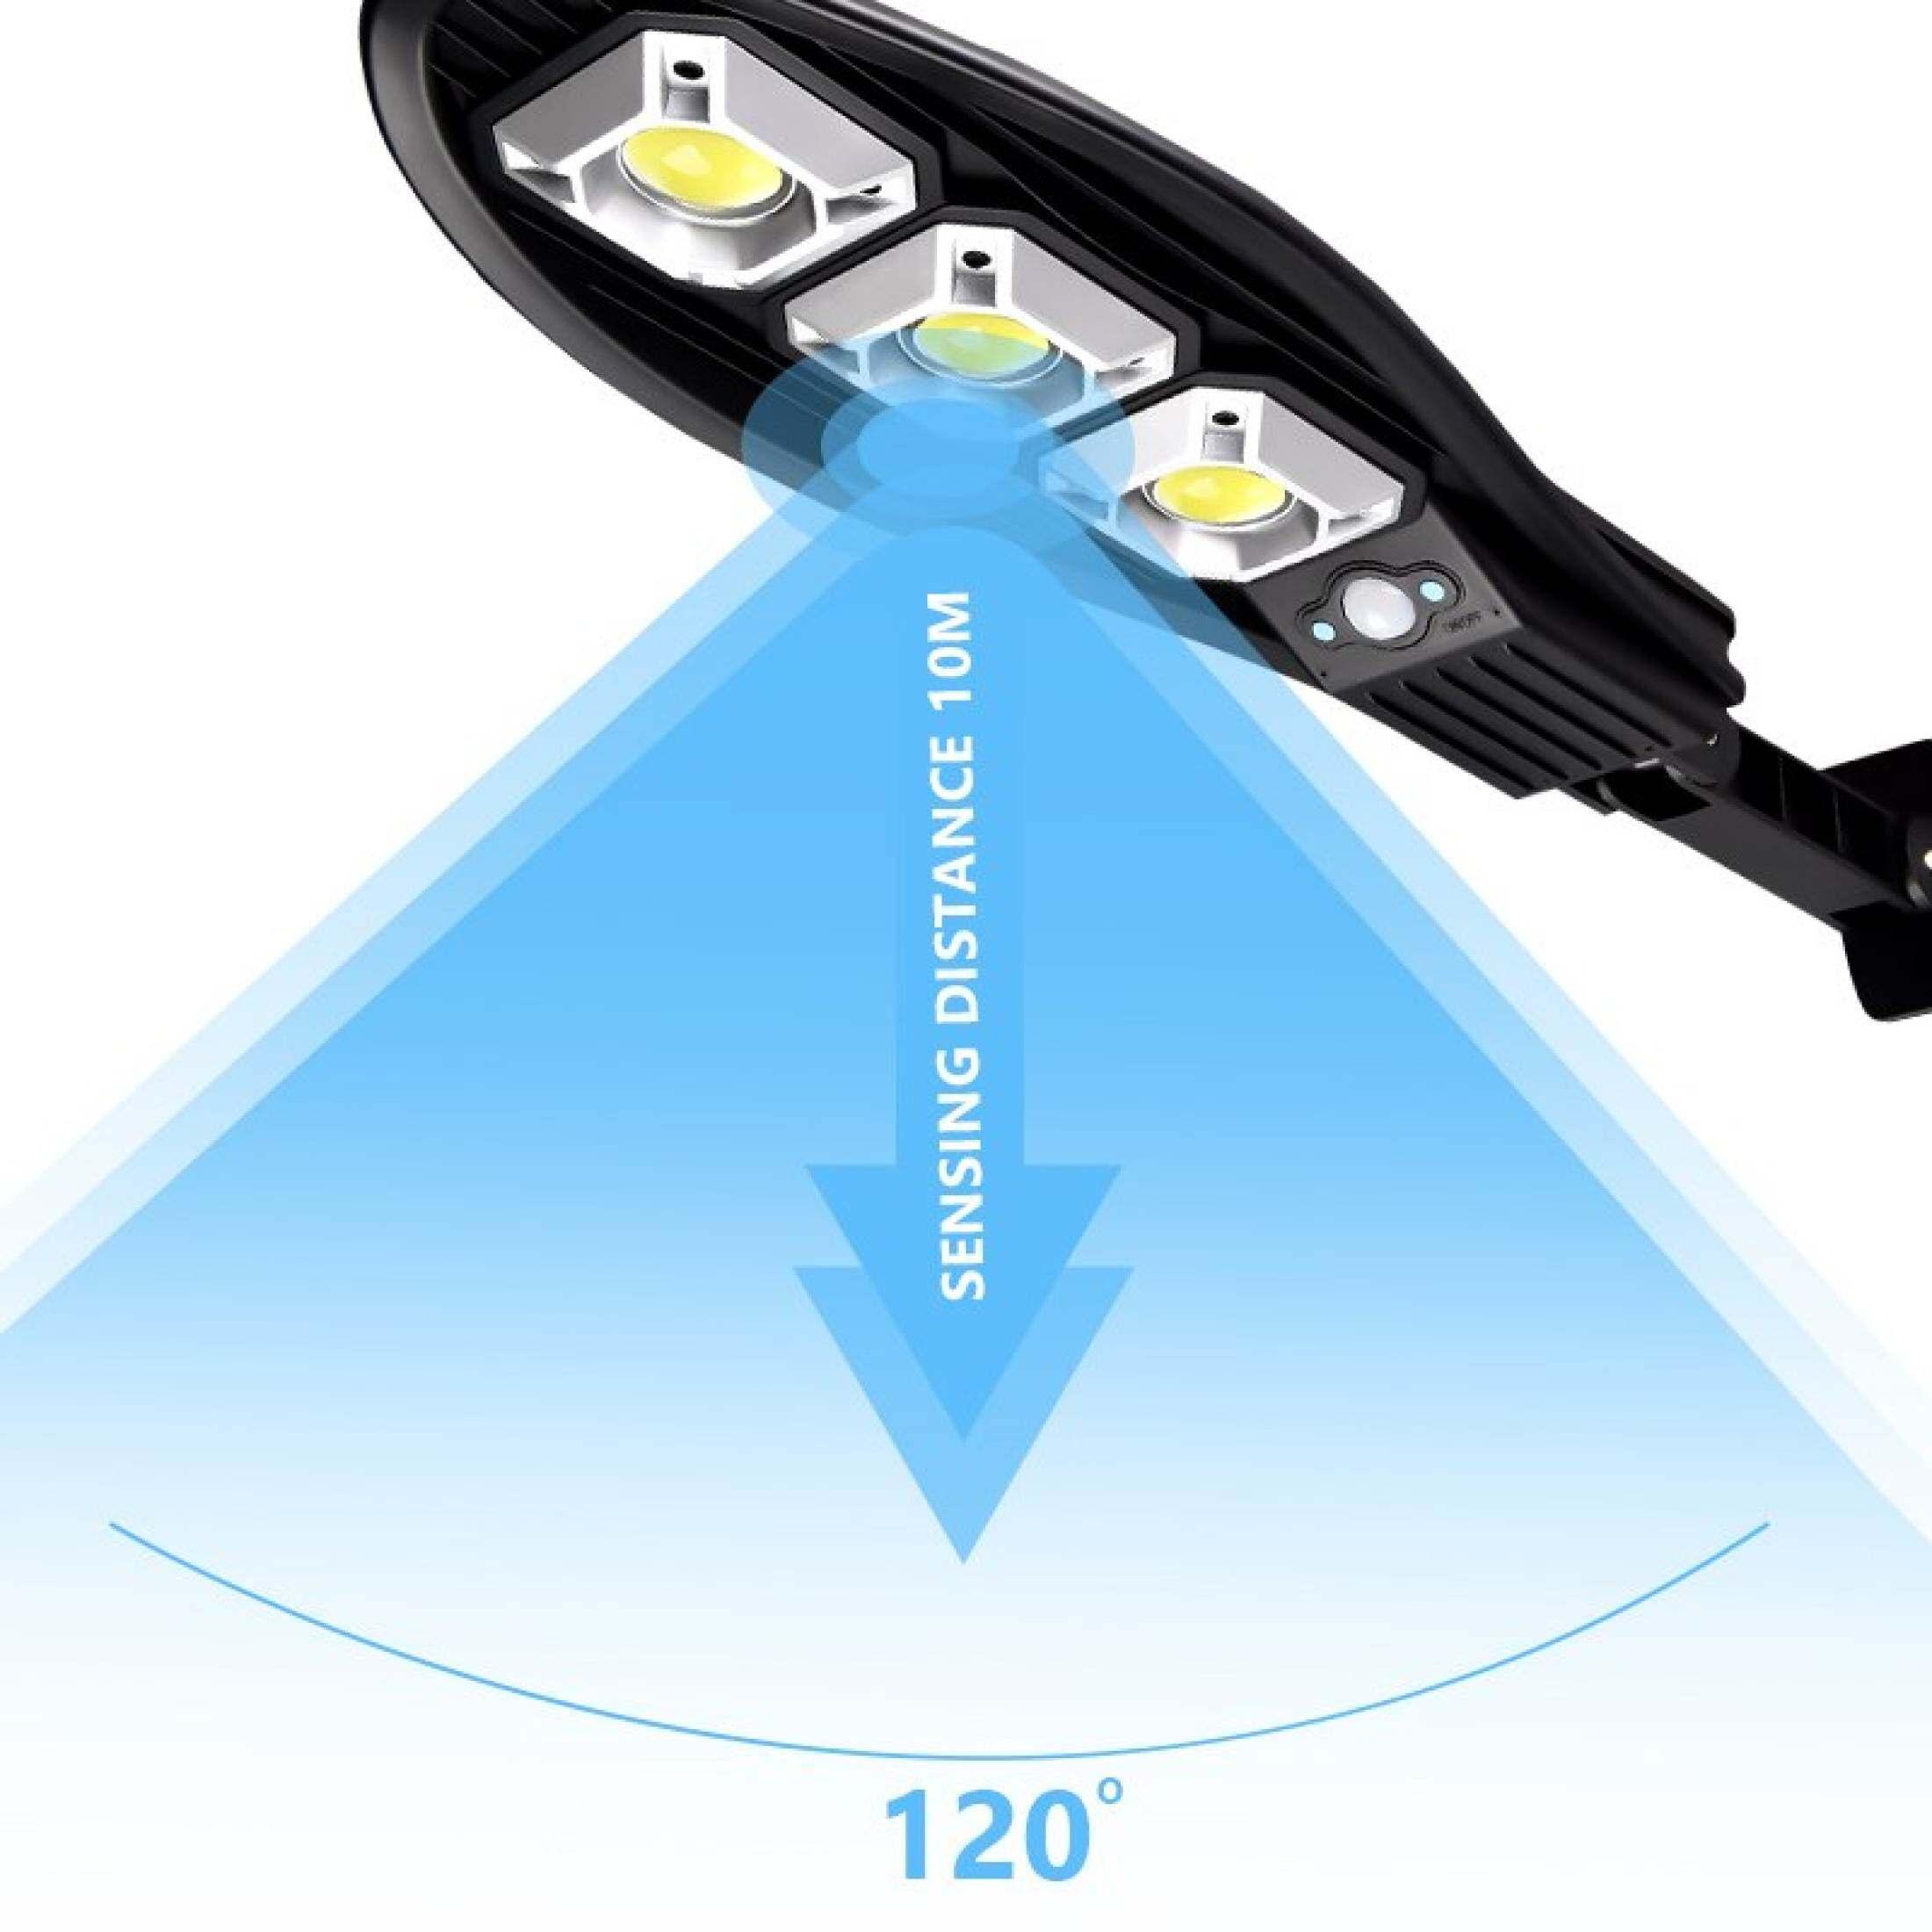 Lampa stradala solara, 90 LED COB, 3 moduri, telecomanda inclusa